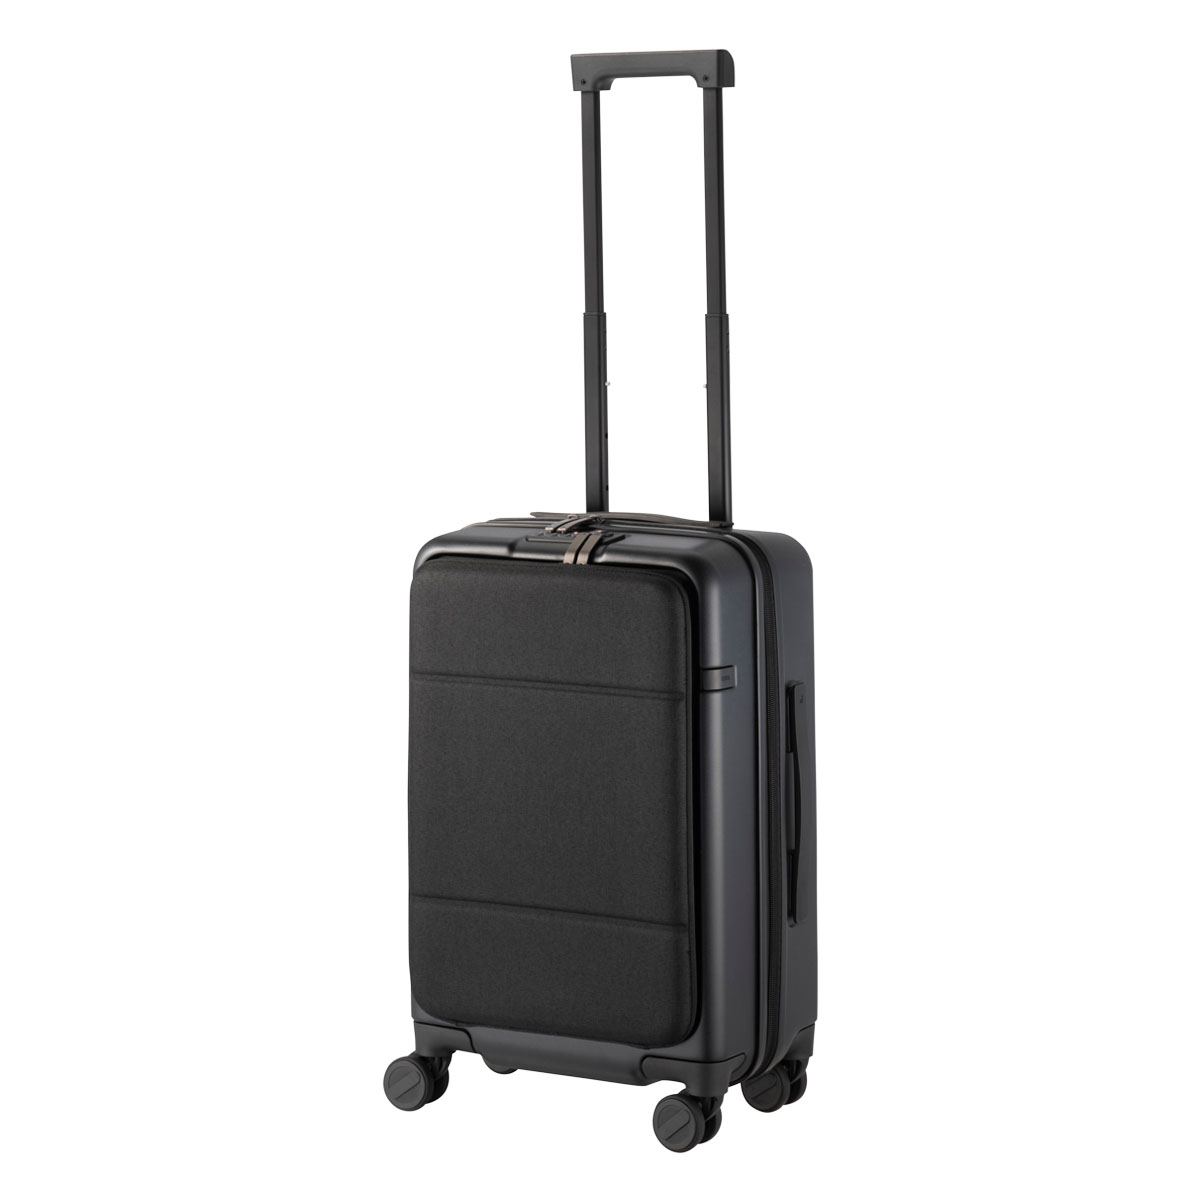 エースジーン スーツケース 30L 3.3kg 55cm コンビクルーザーTR 05152 ace....